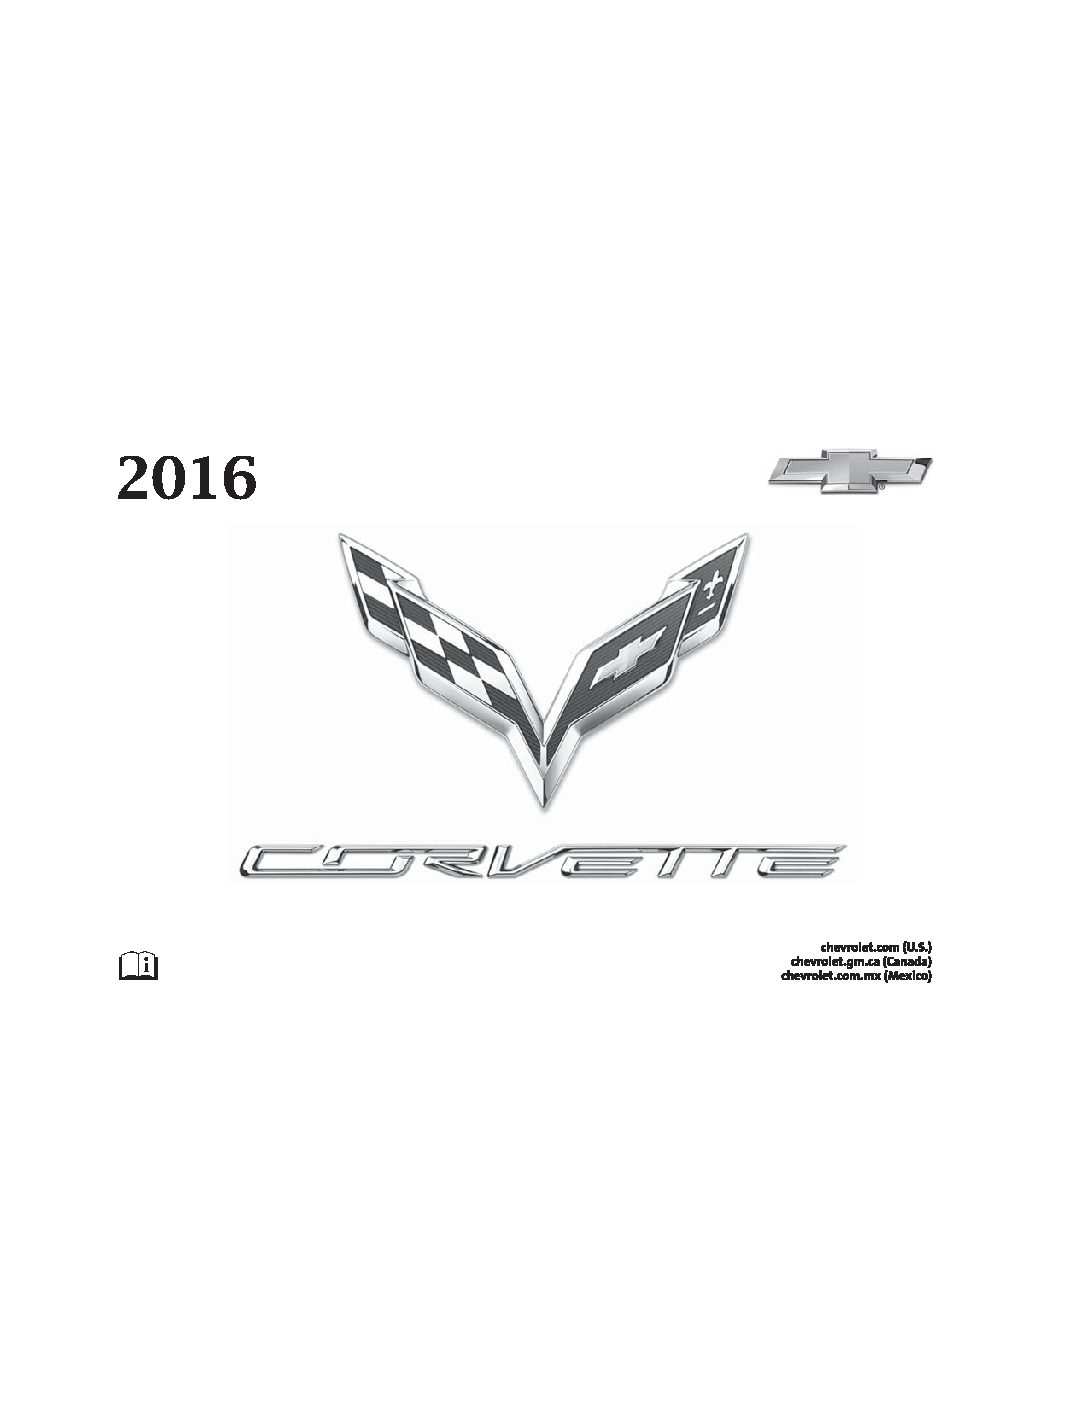 2016 Chevrolet Corvette Image